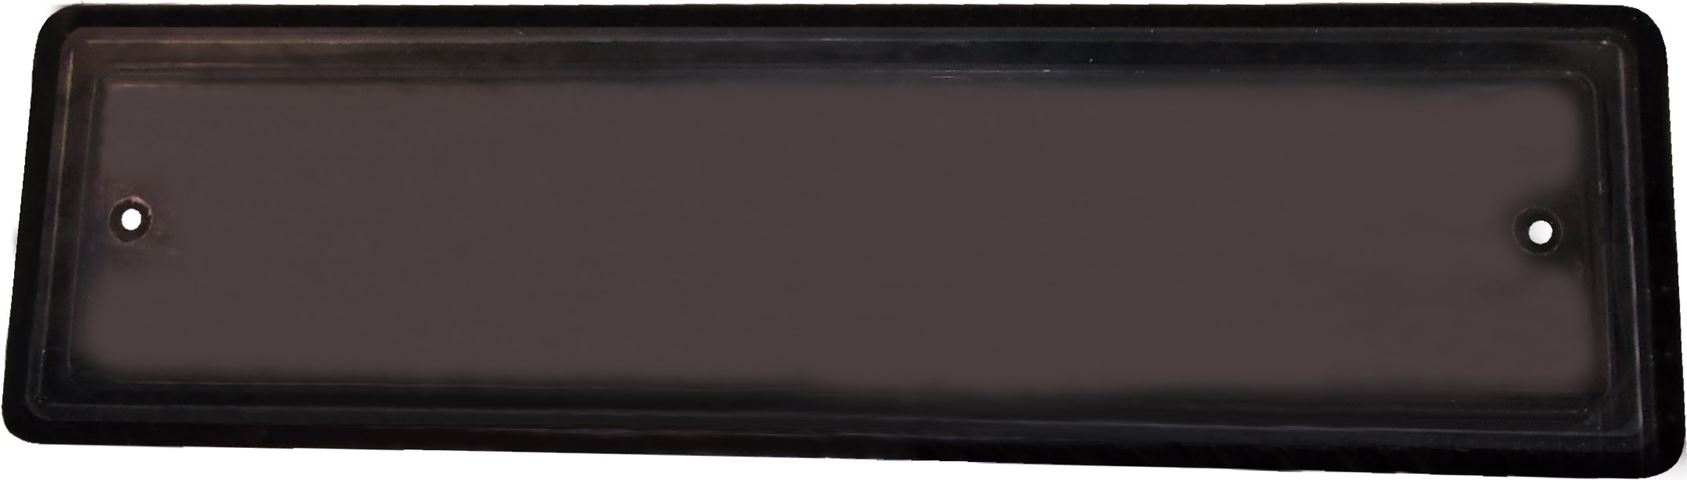 Finetsra Fissa per Porta 930x260 mm colore Grigio Scuro